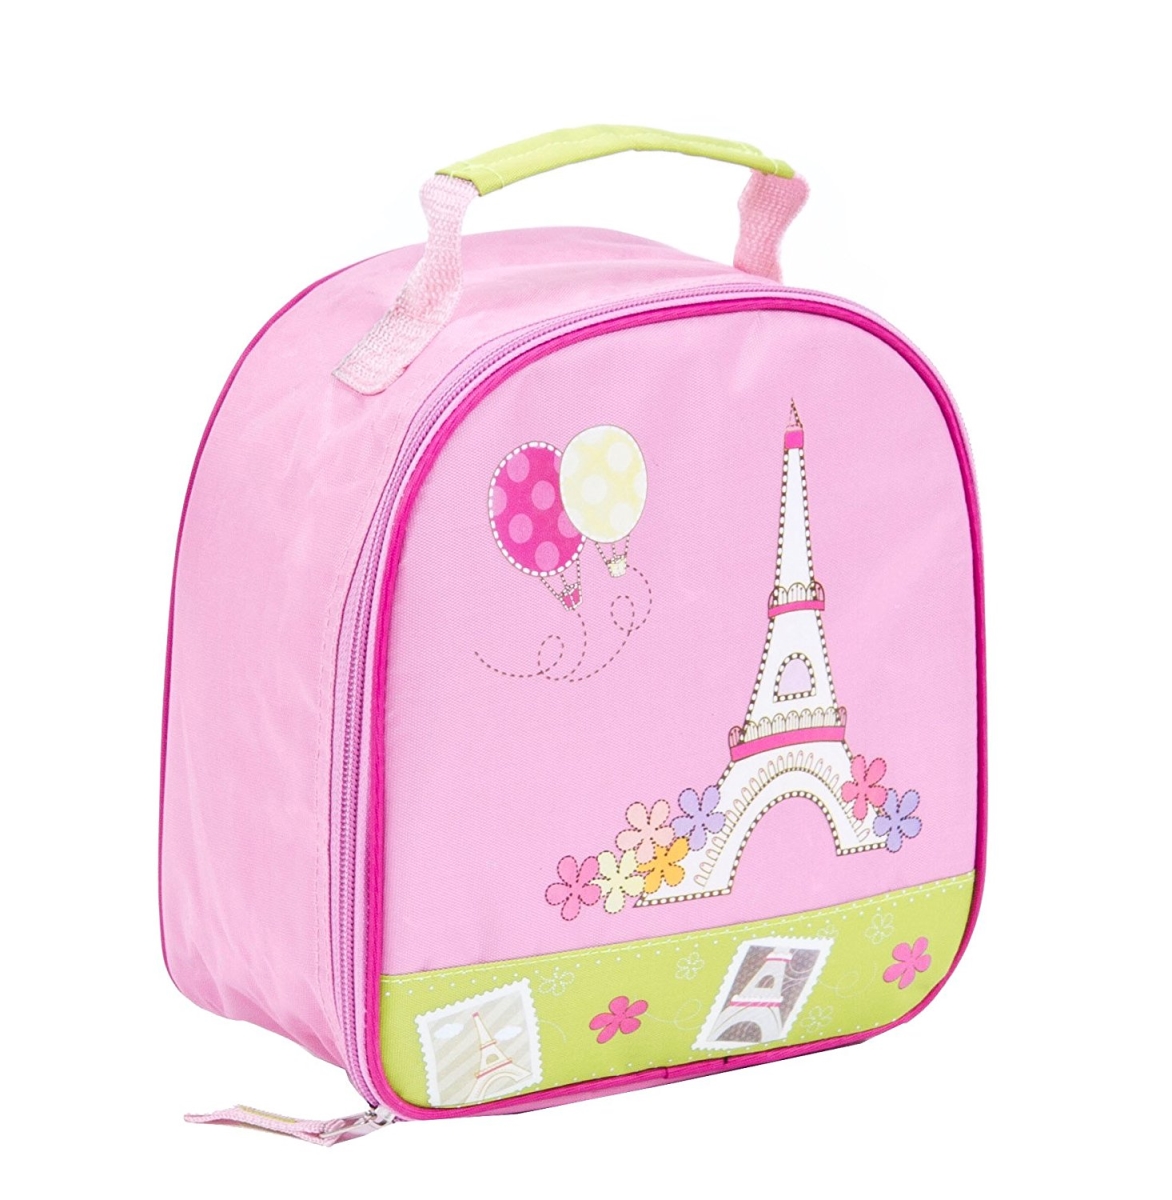 Lp2392 Pink & Green Girls Paris Lunchbox